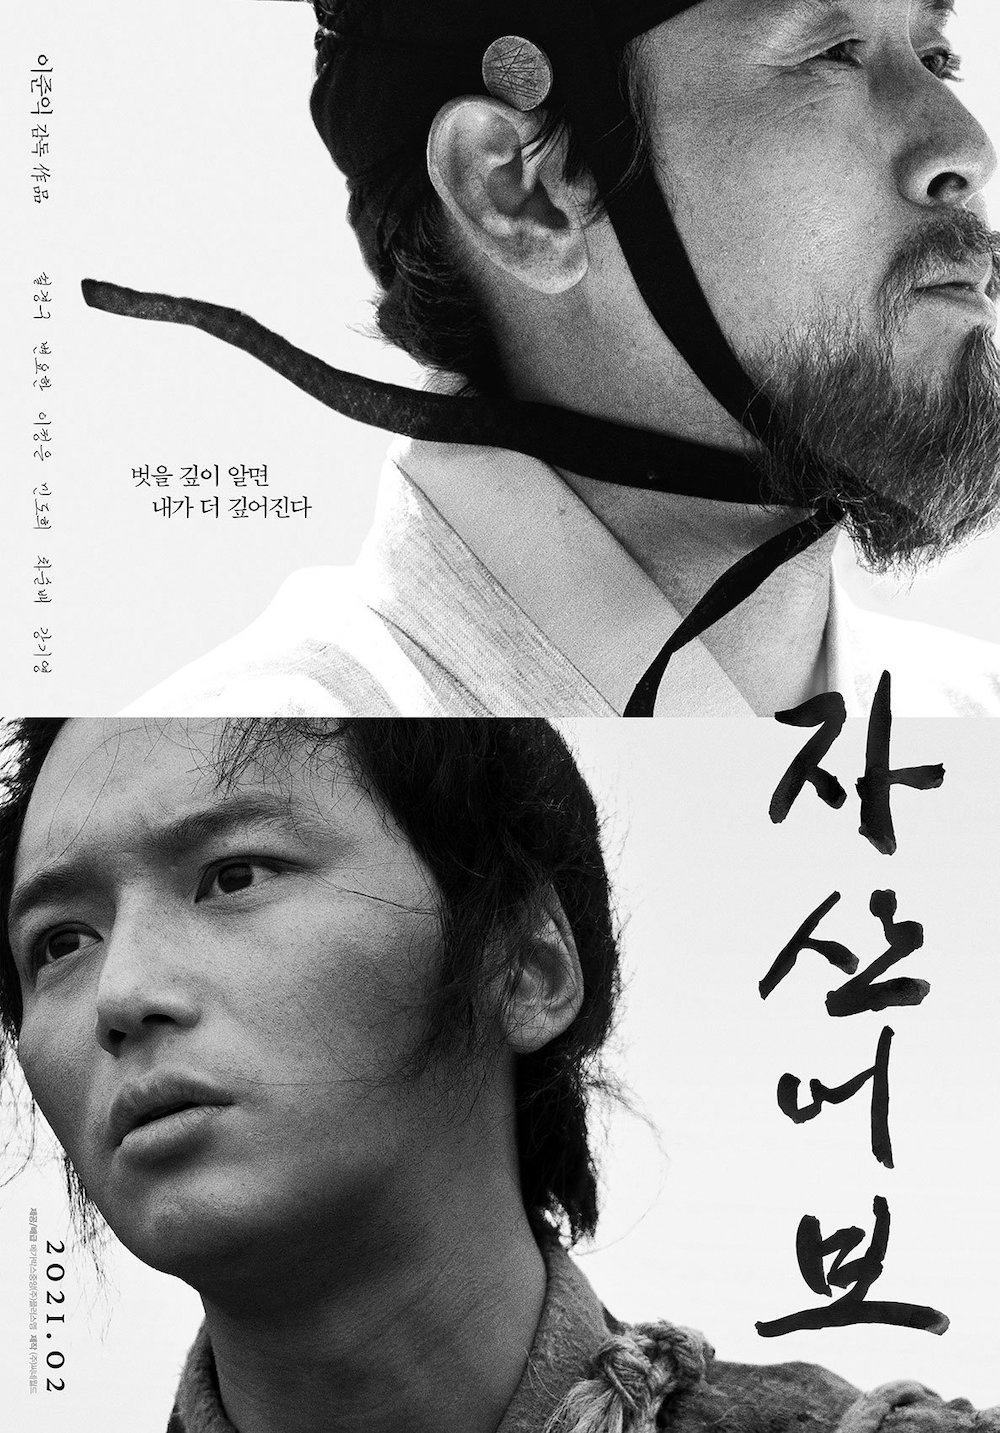 Giải thưởng Điện ảnh Rồng Xanh lần thứ 42: Seol Kyung Gu lần thứ ba lên ngôi 'ảnh đế'